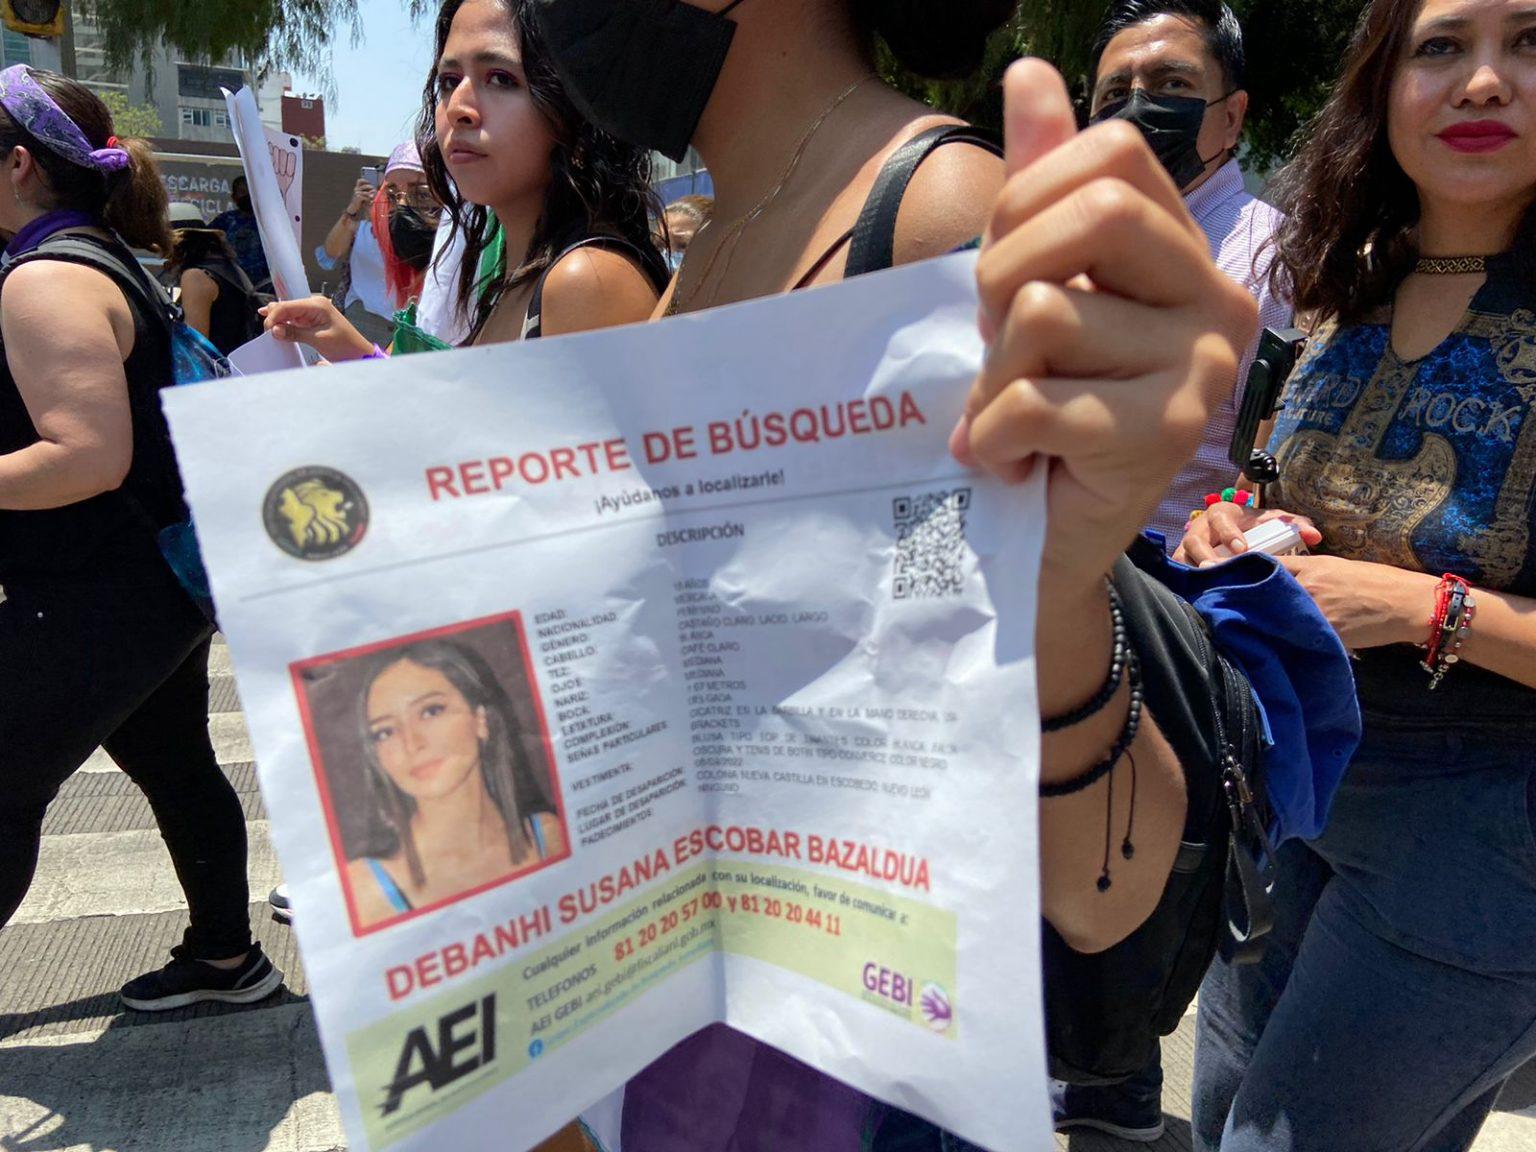 $!‘¡No fue accidente, fue feminicidio!’: Mujeres marchan en CDMX para exigir justicia en el caso Debanhi